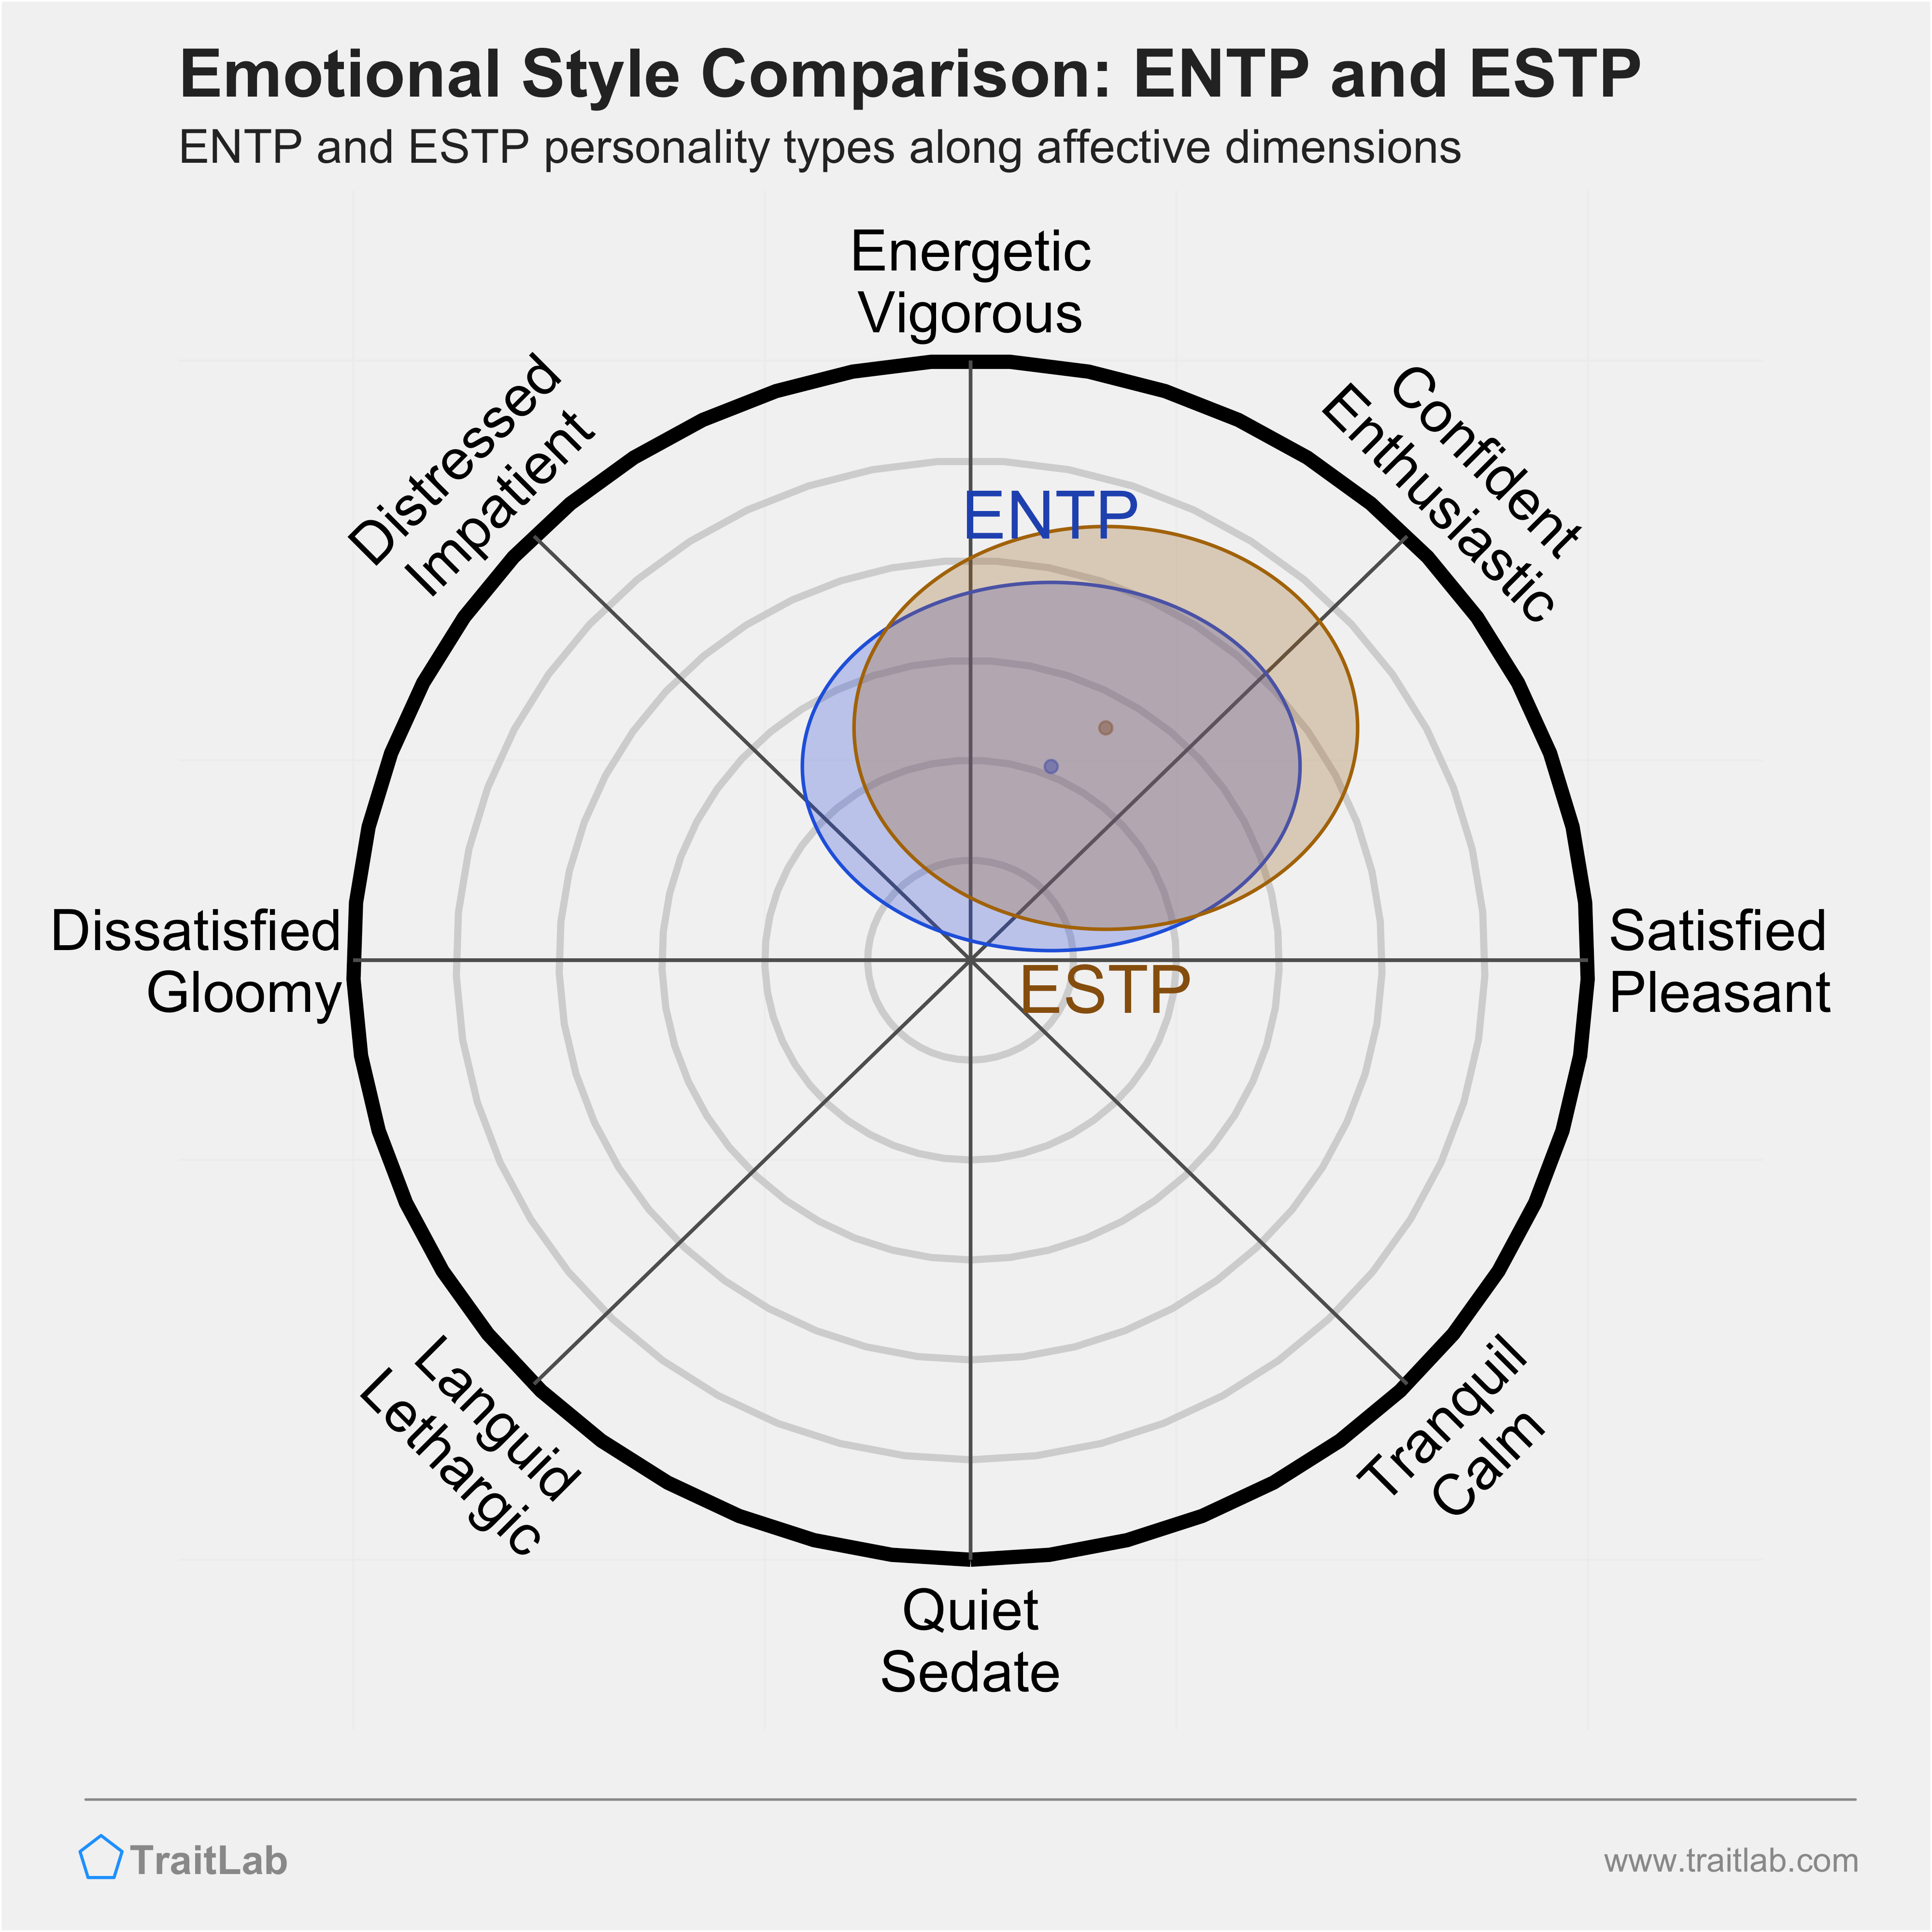 ENTP and ESTP comparison across emotional (affective) dimensions